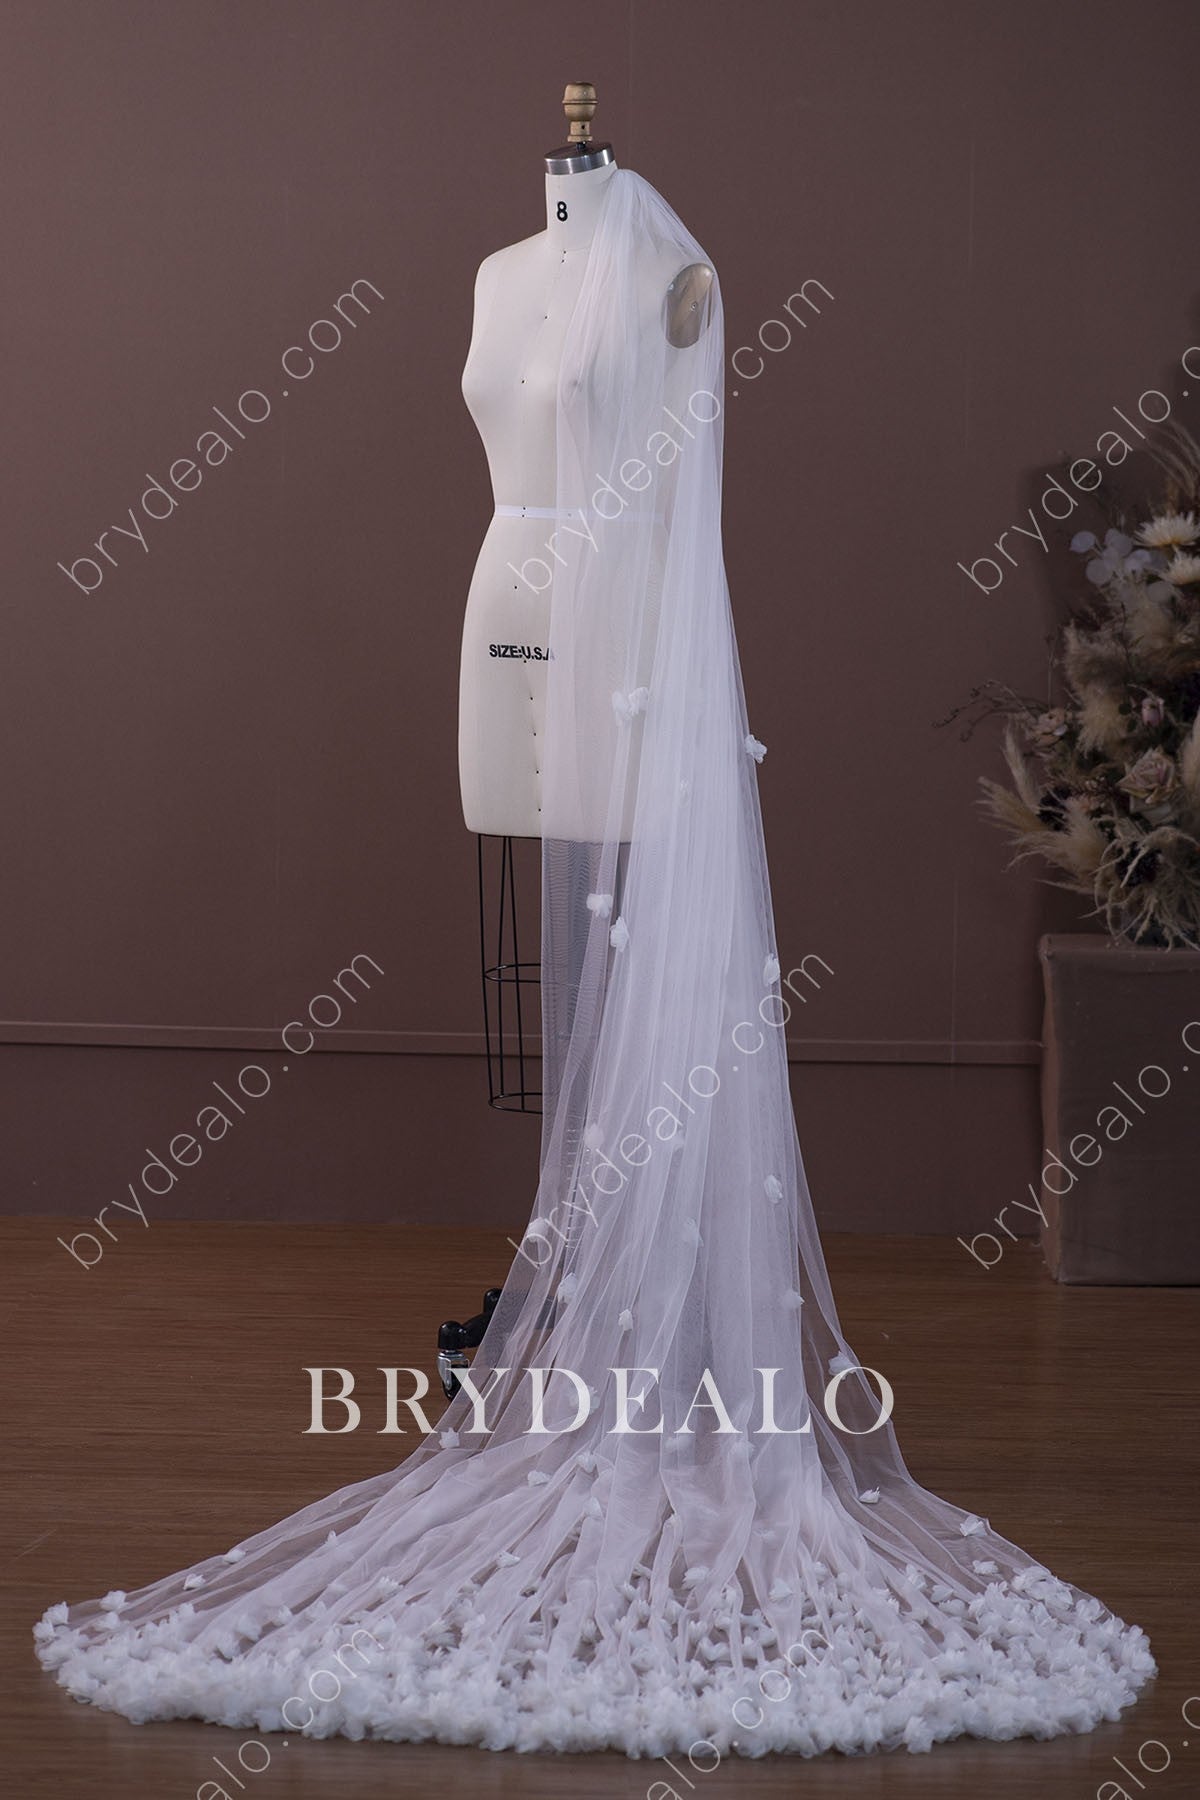 https://brydealofactory.com/cdn/shop/products/exquisite-3D-flowers-chapel-length-wedding-veil.jpg?v=1644151619&width=1200